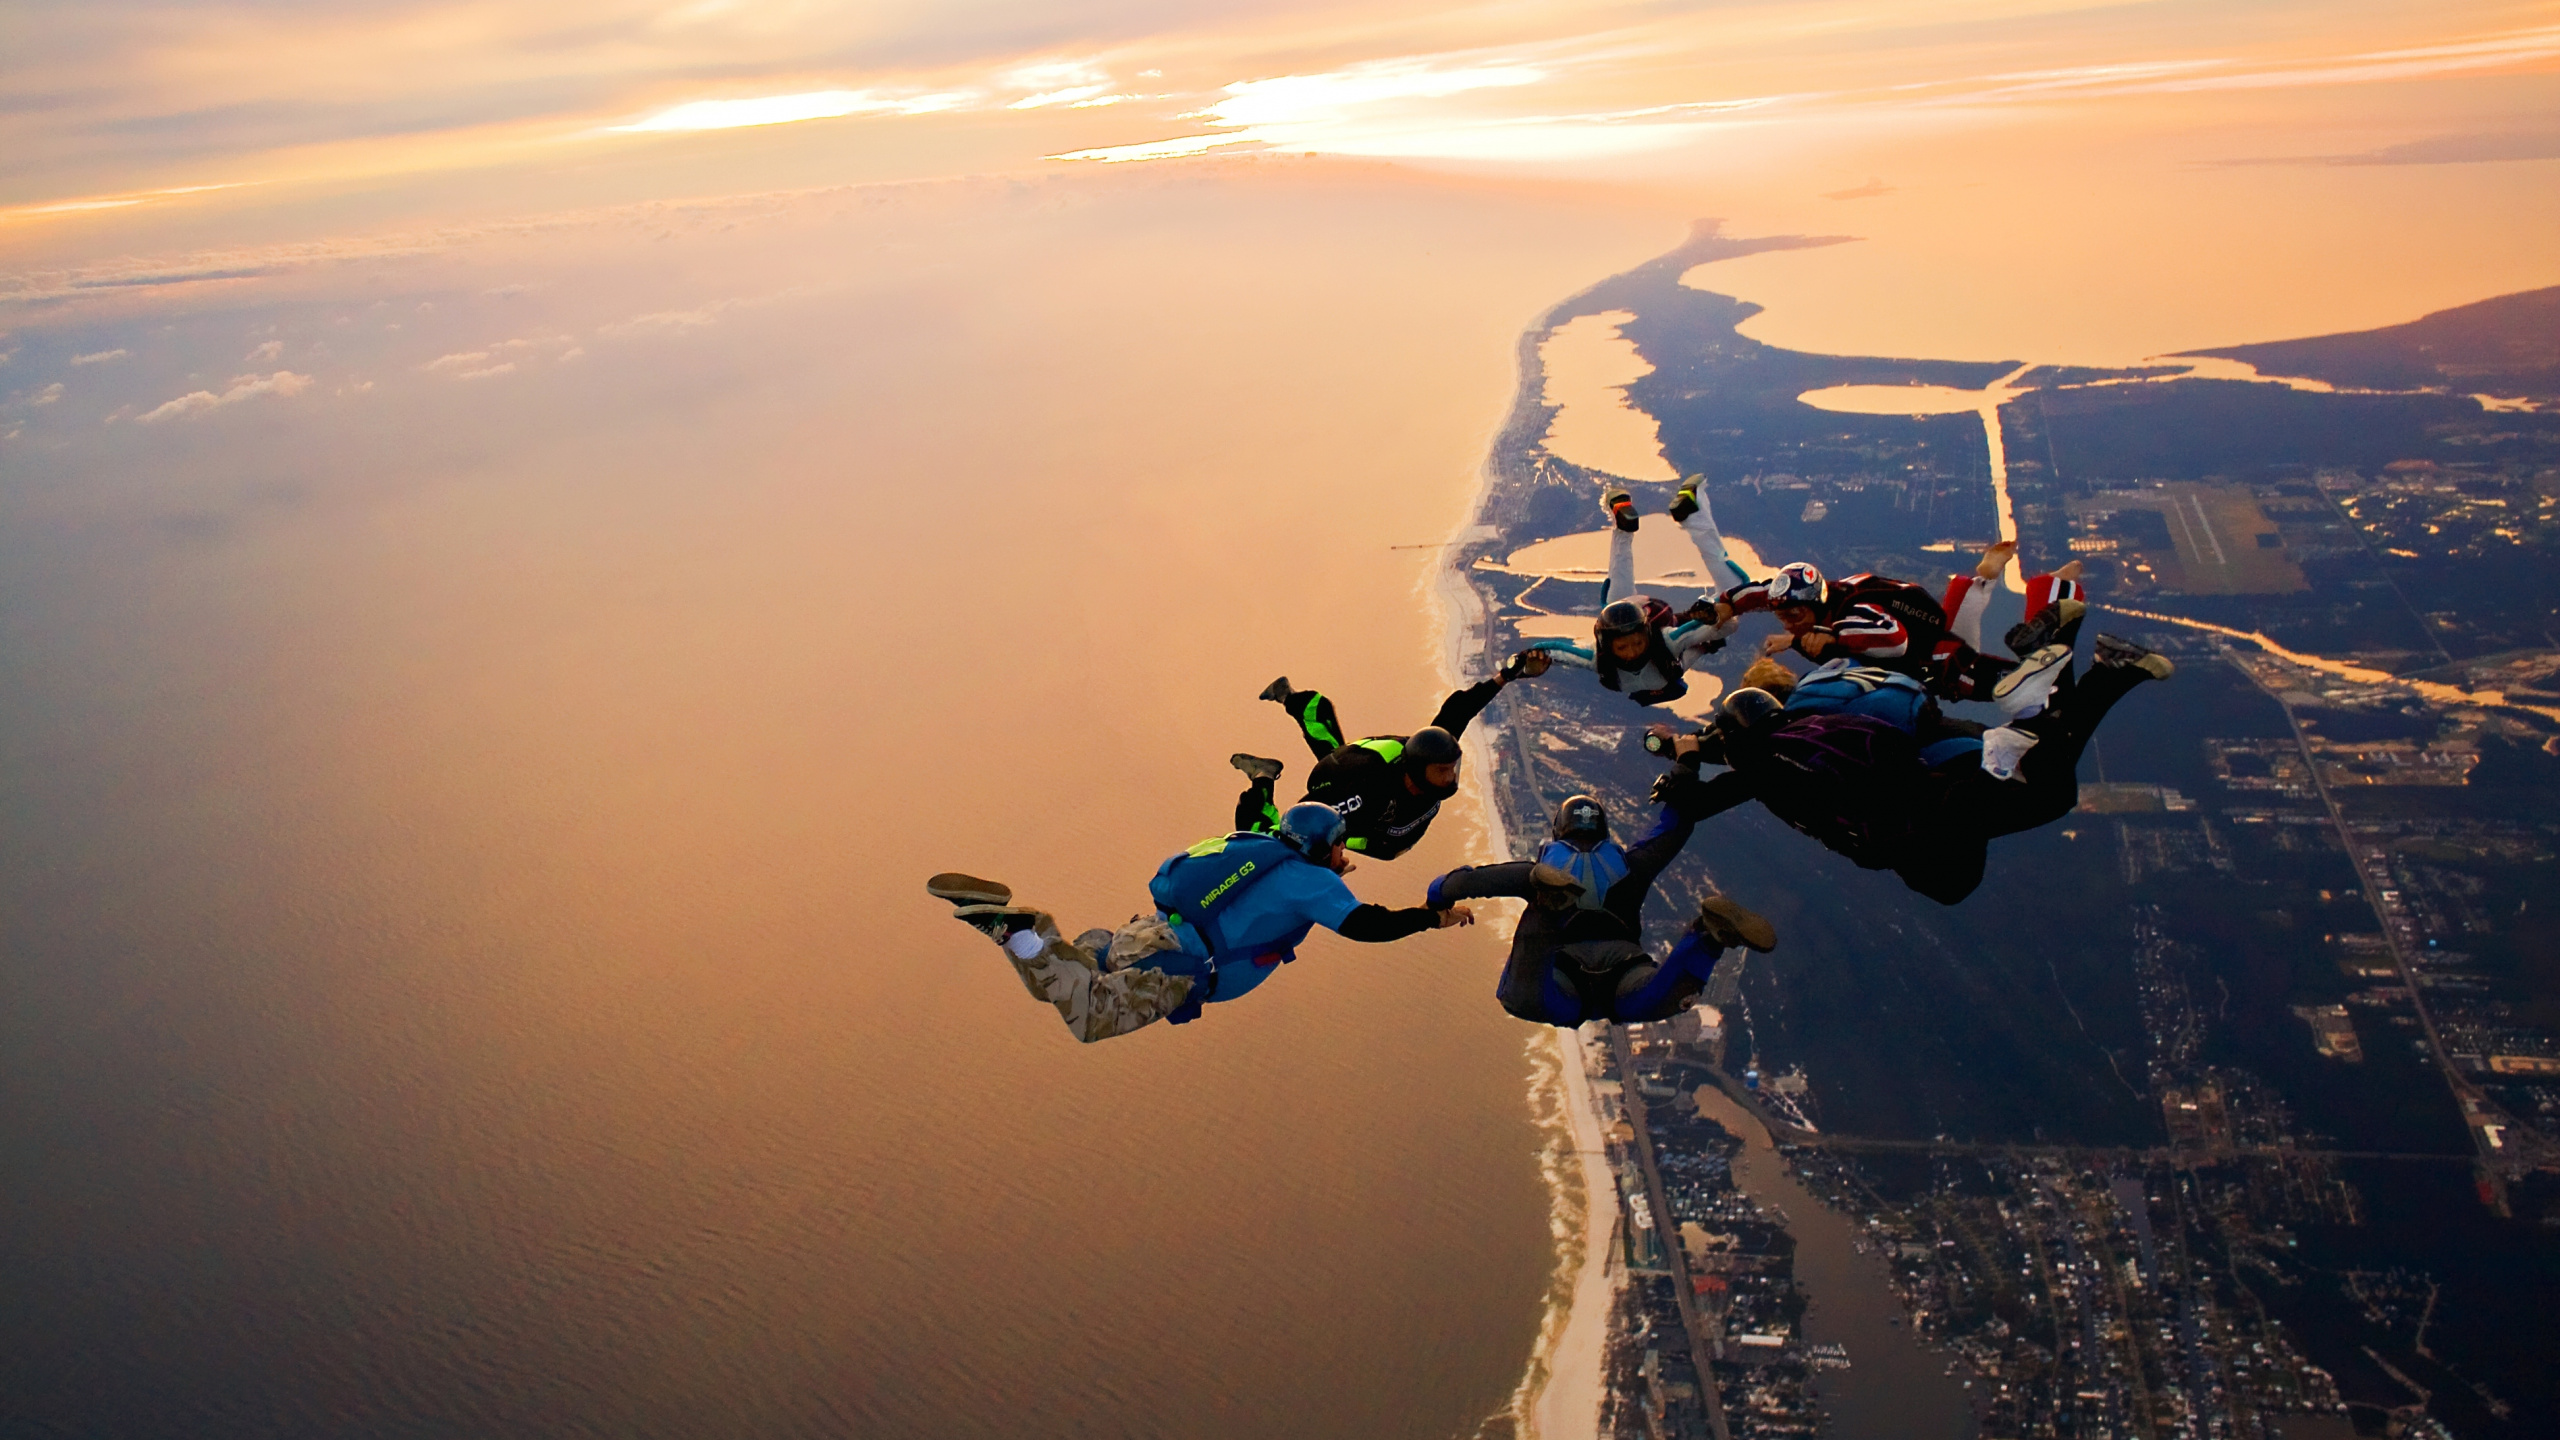 Обои прыжки с парашютом на закате, парашютный спорт, парашют, экстремальный вид спорта, воздушные виды спорта в разрешении 2560x1440